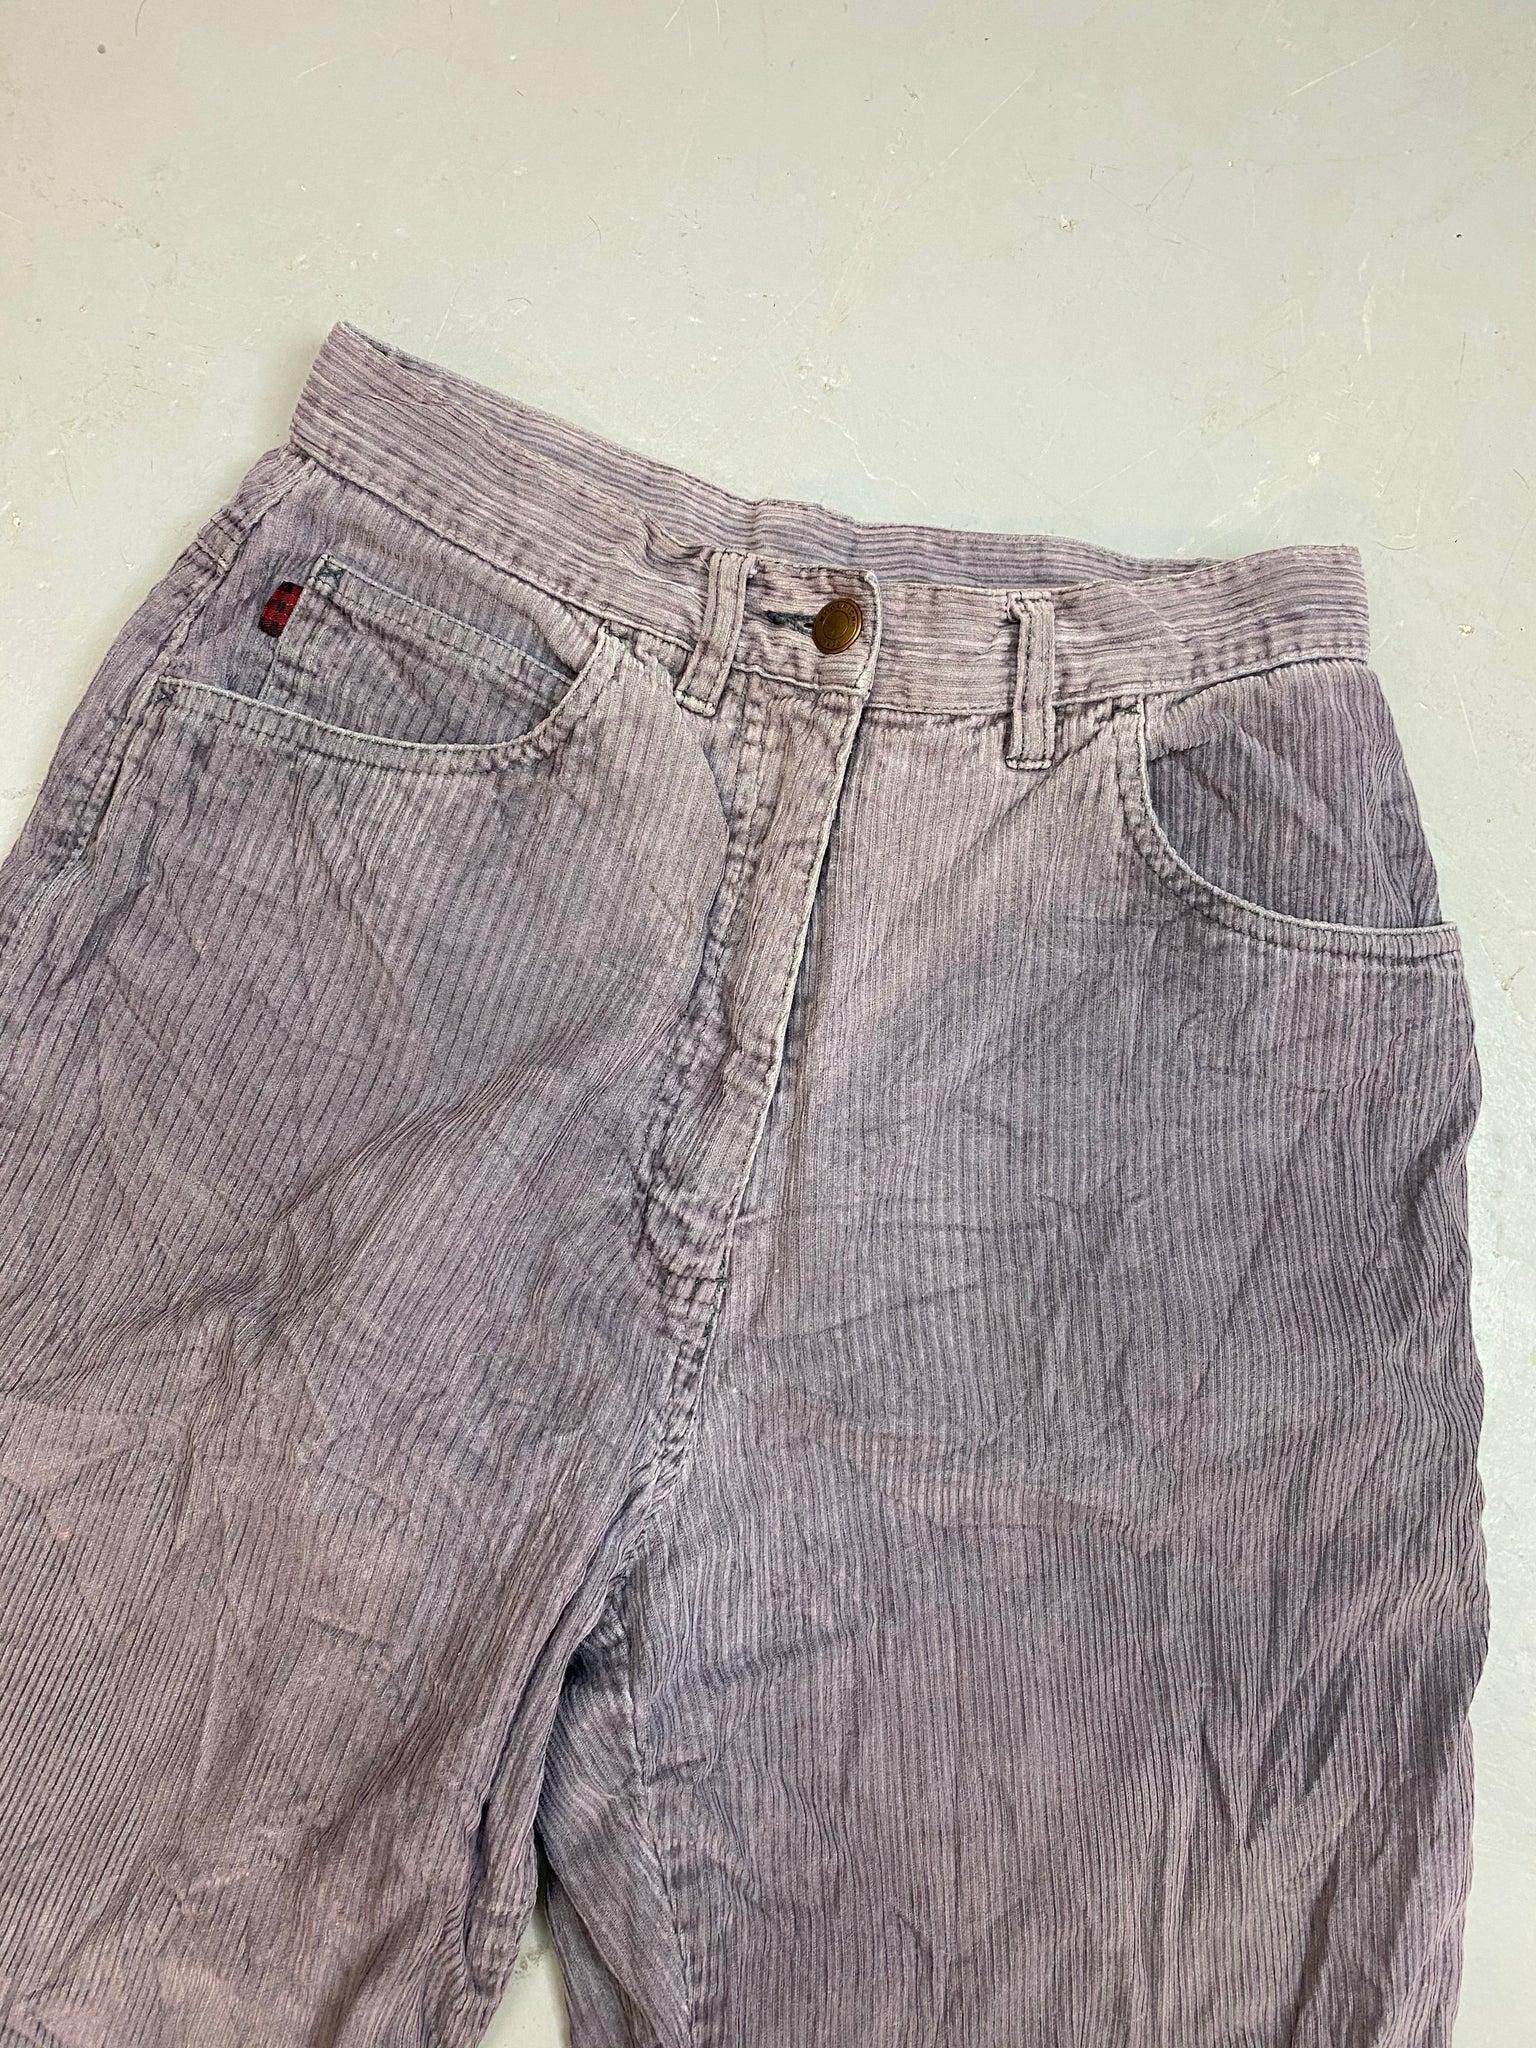 True vintage corduroy pants - Gem